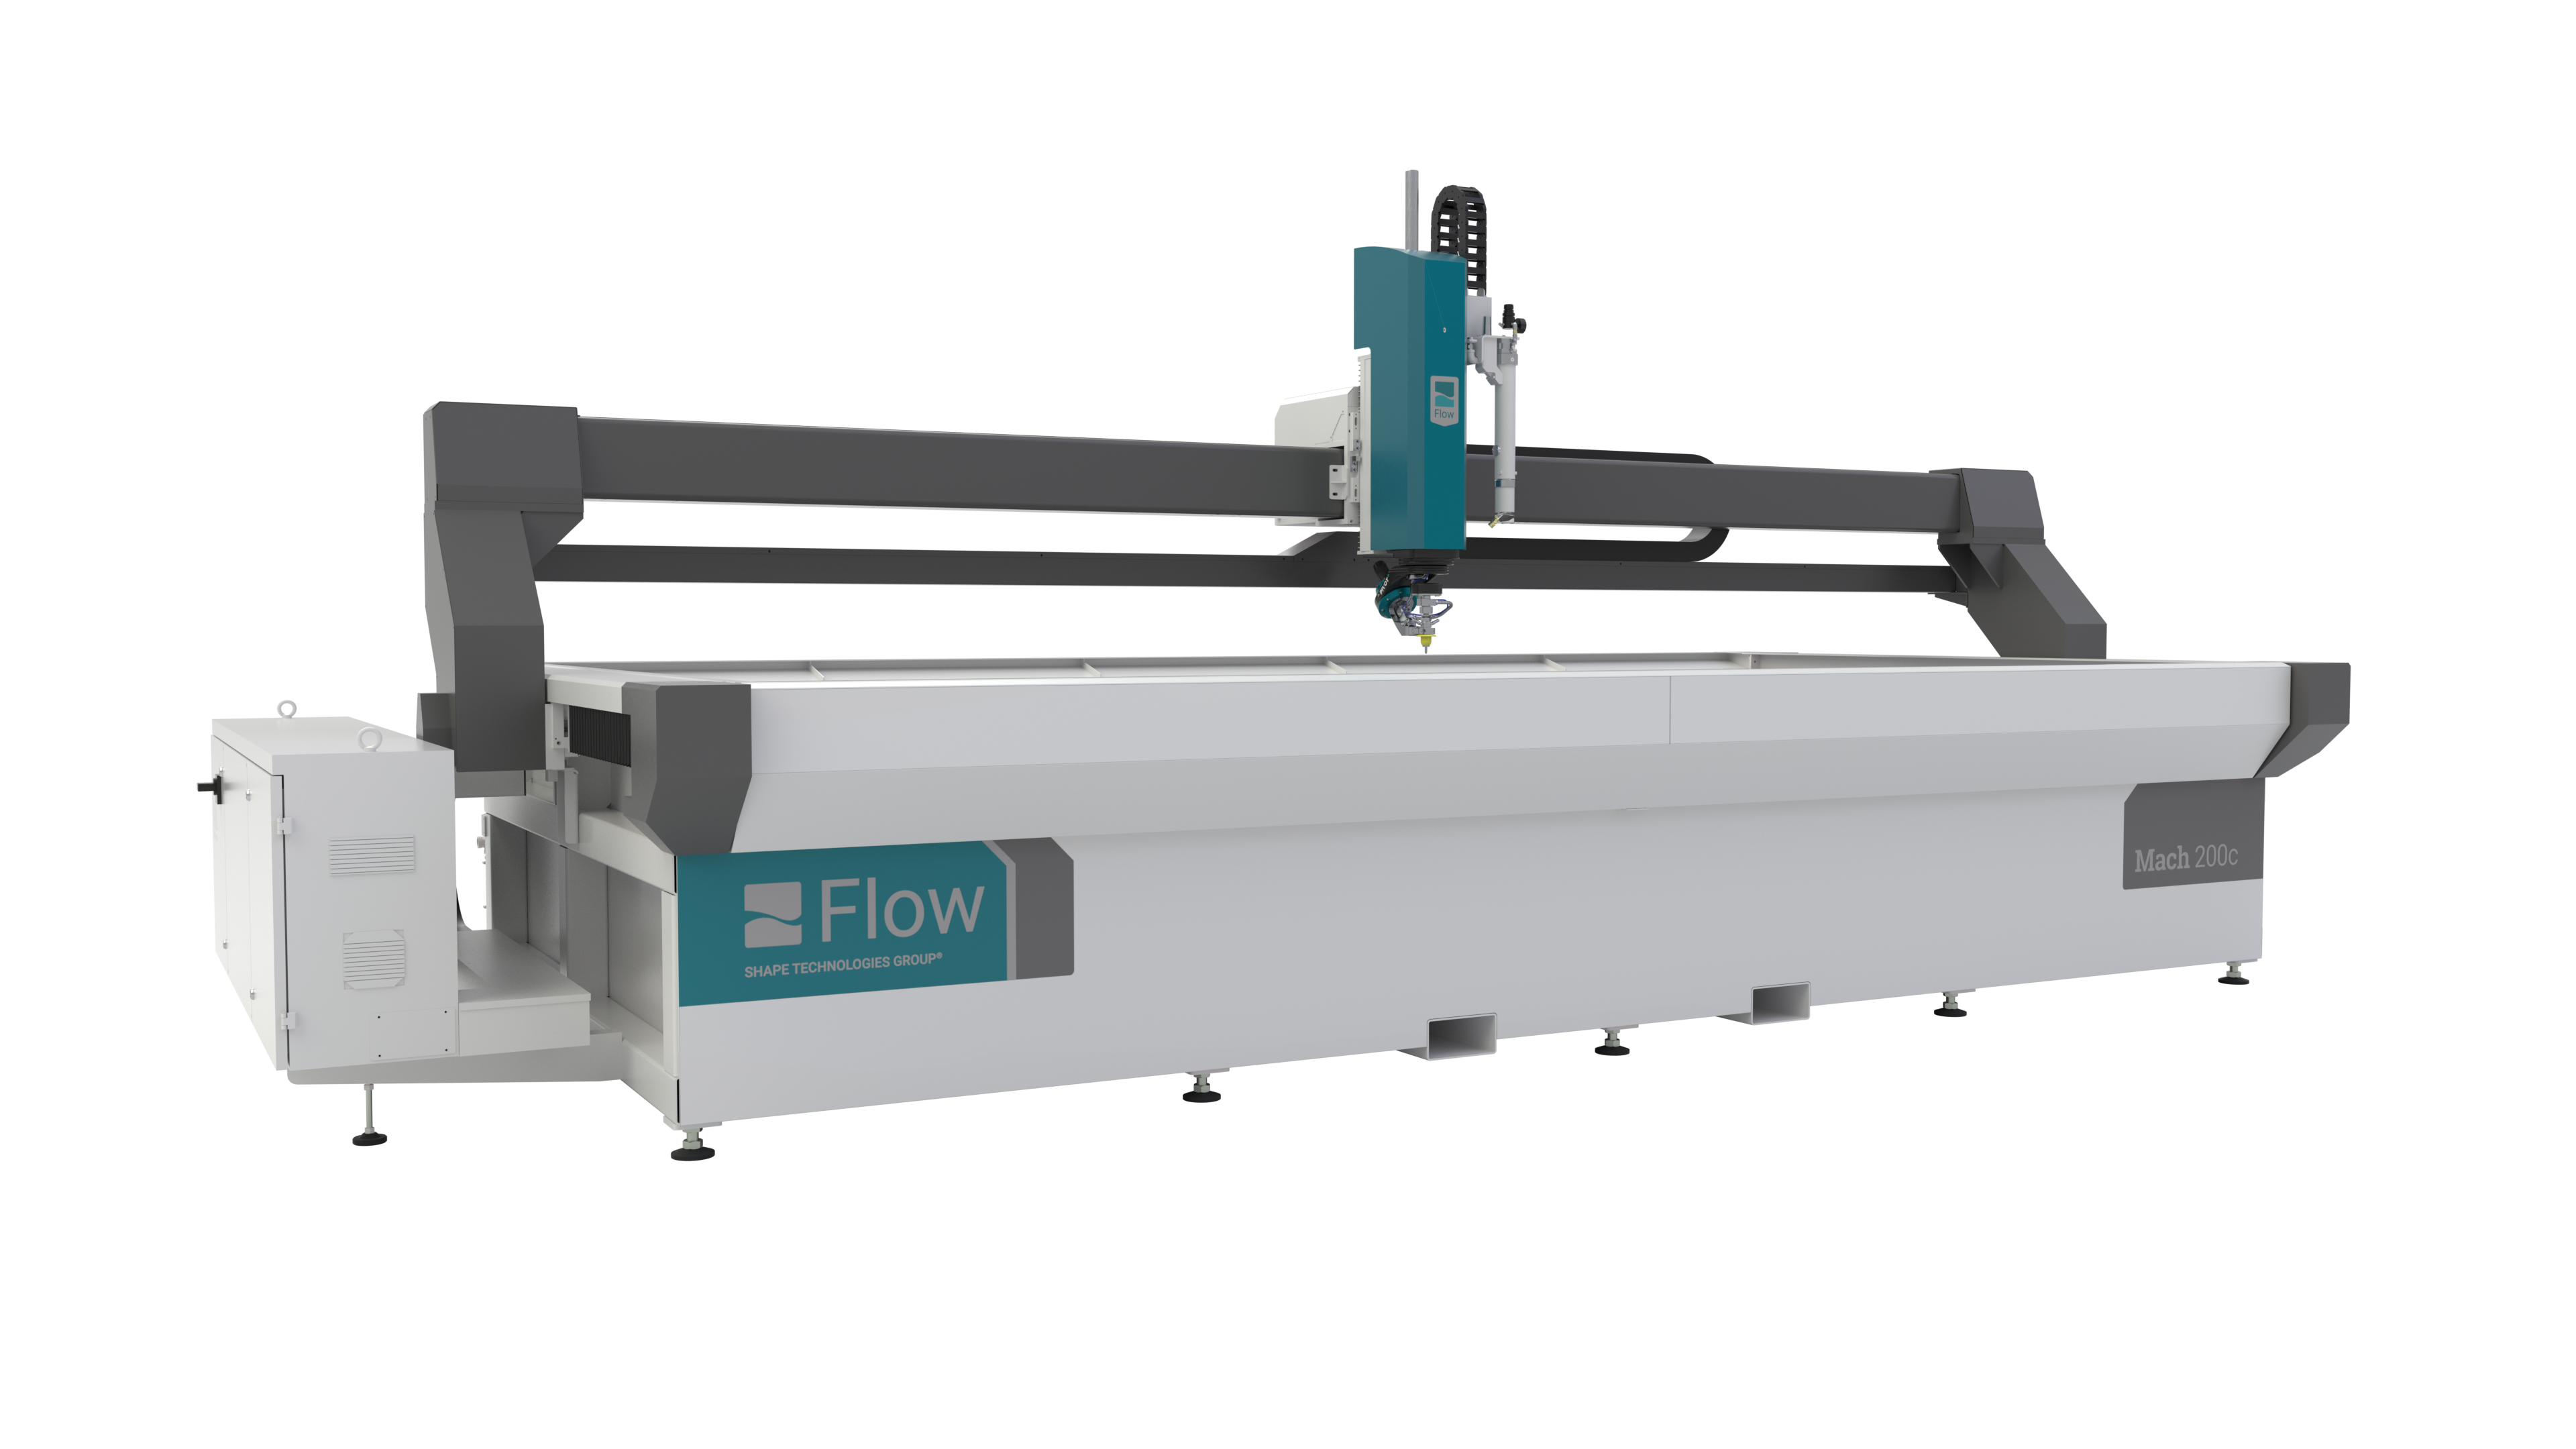 Flow Mach 200c Wasserstrahlmaschine